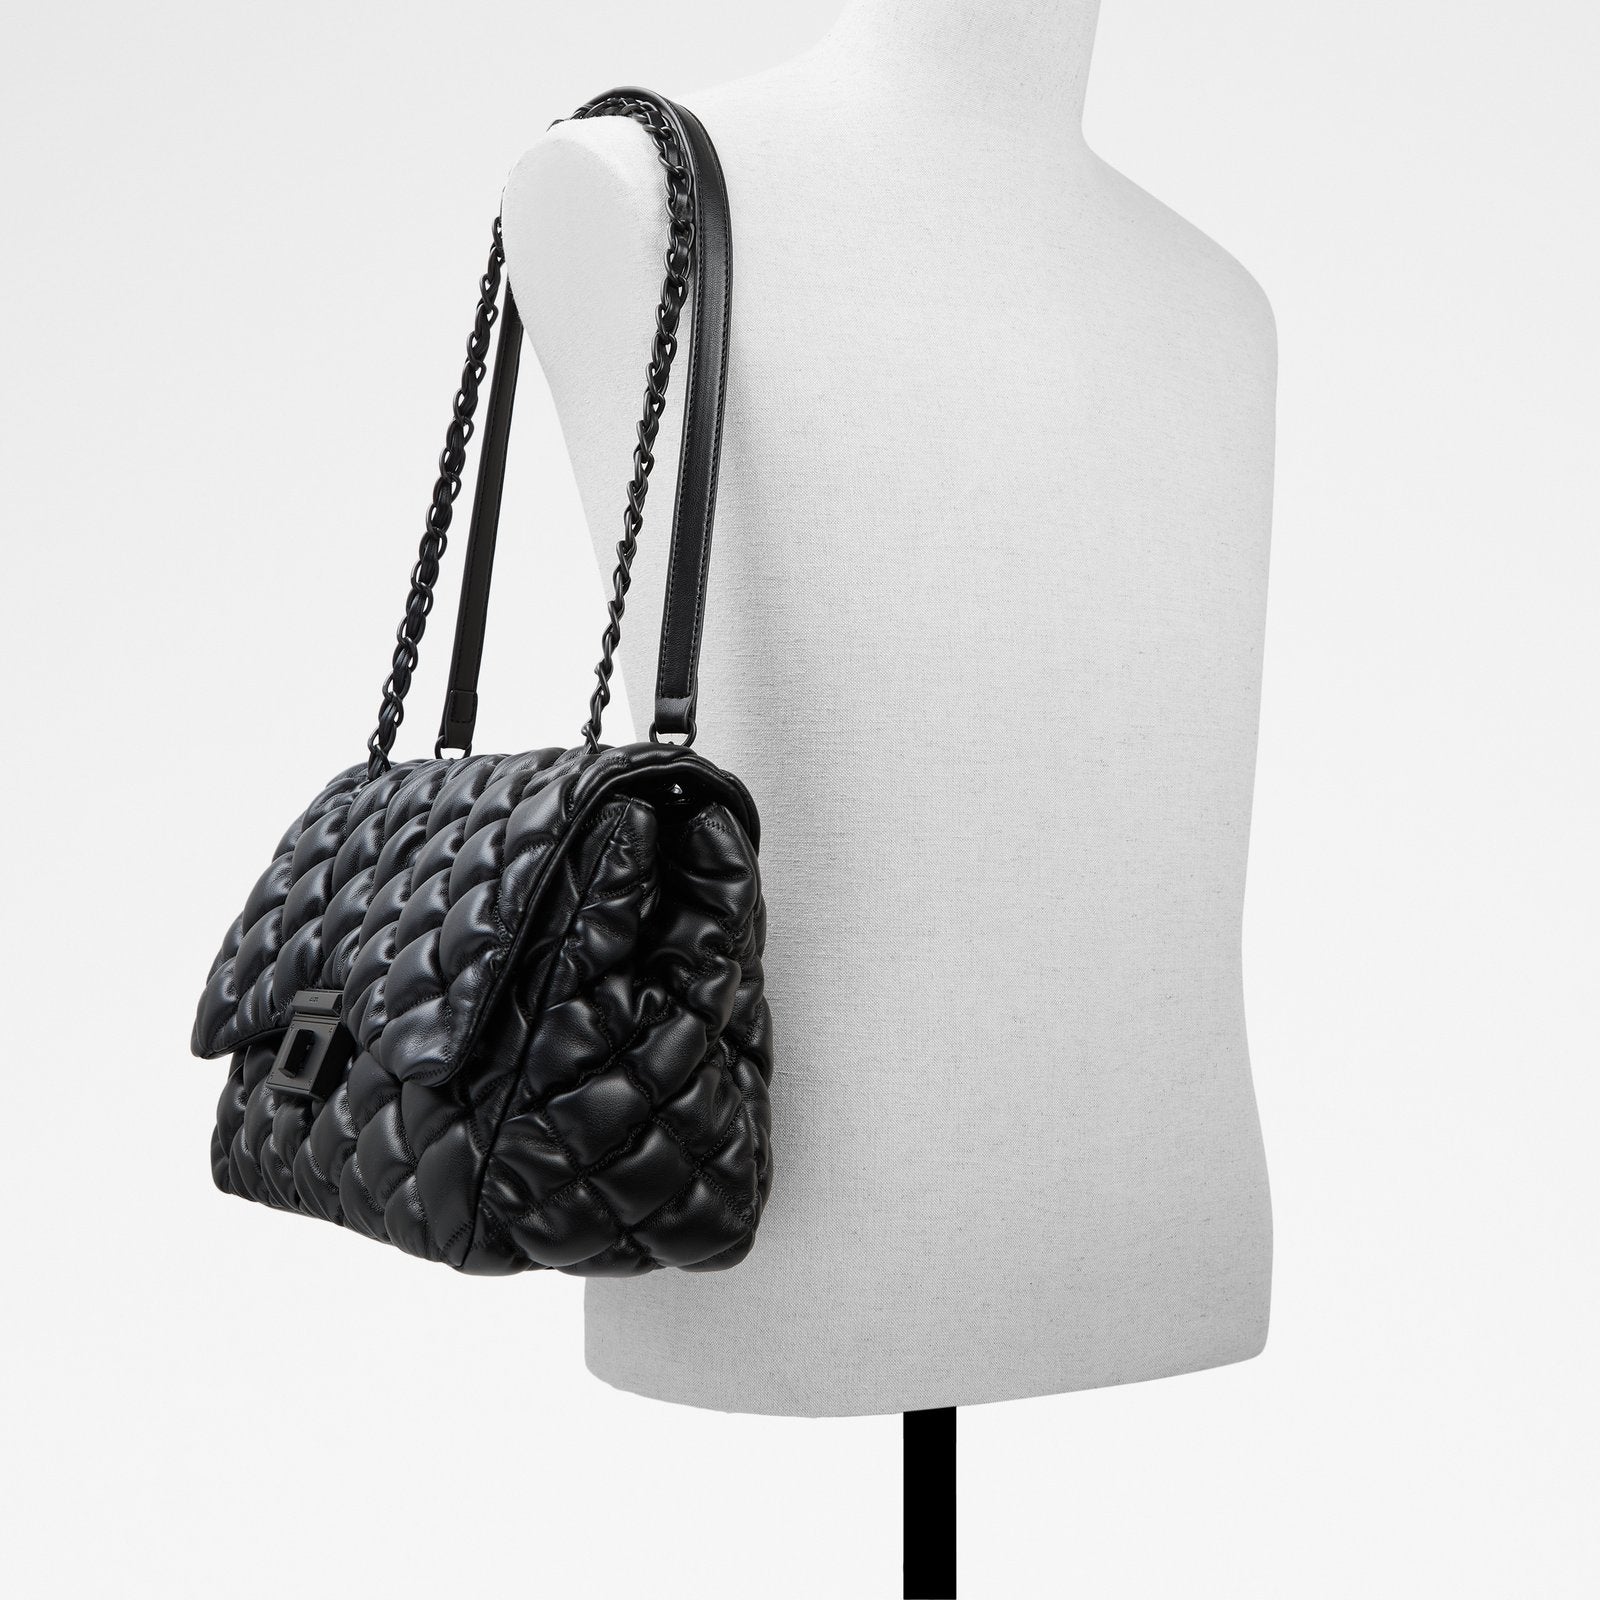 Ilsa / Cross body Bag Bag - Black - ALDO KSA